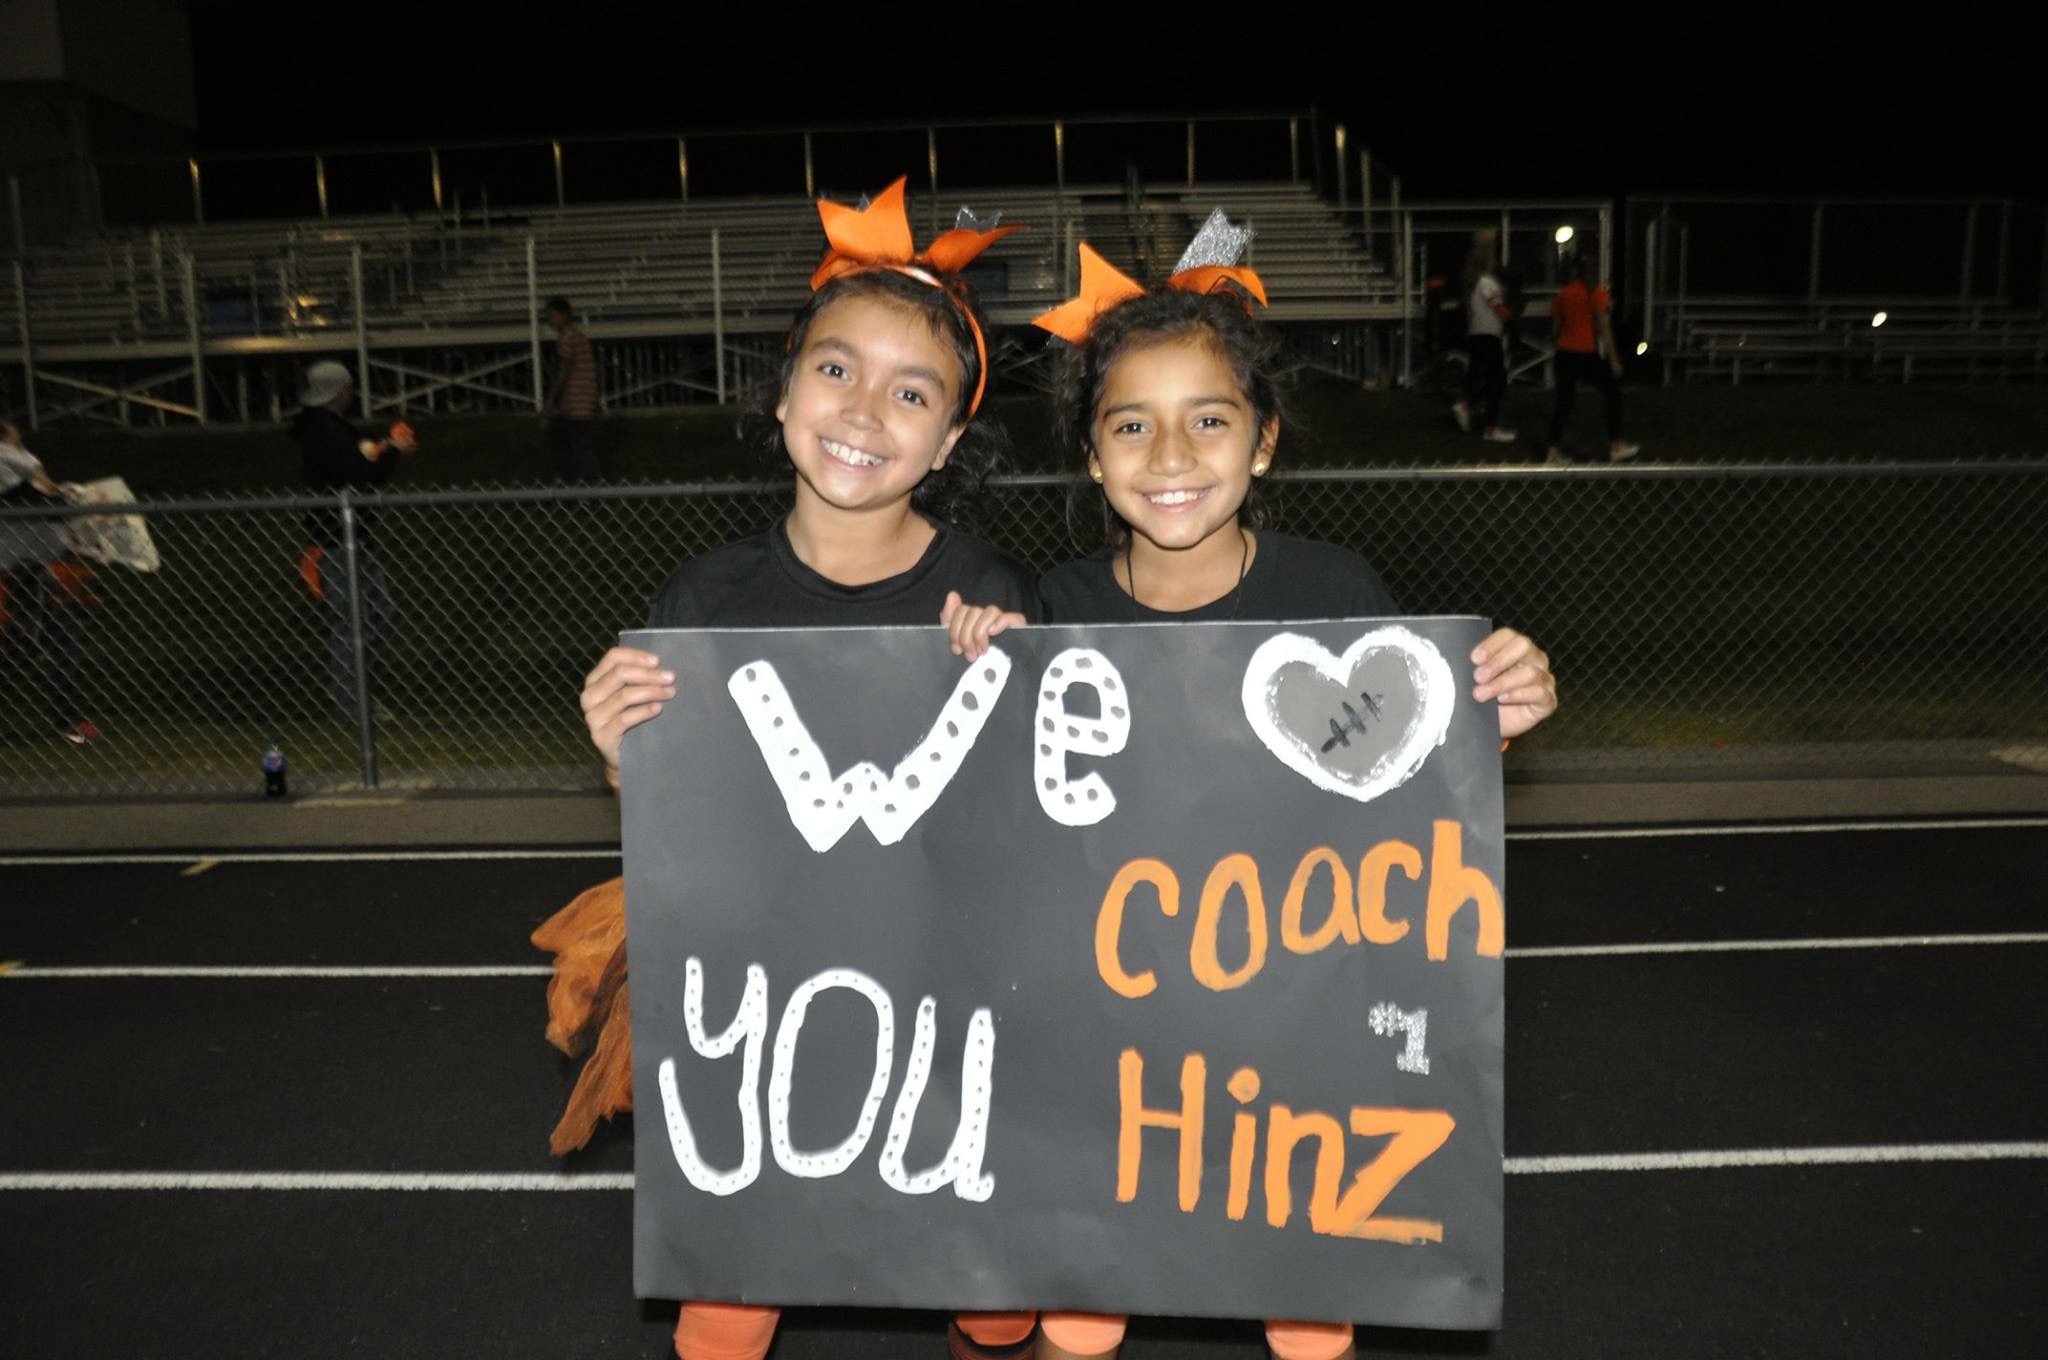 Hinz: Much more than a football coach